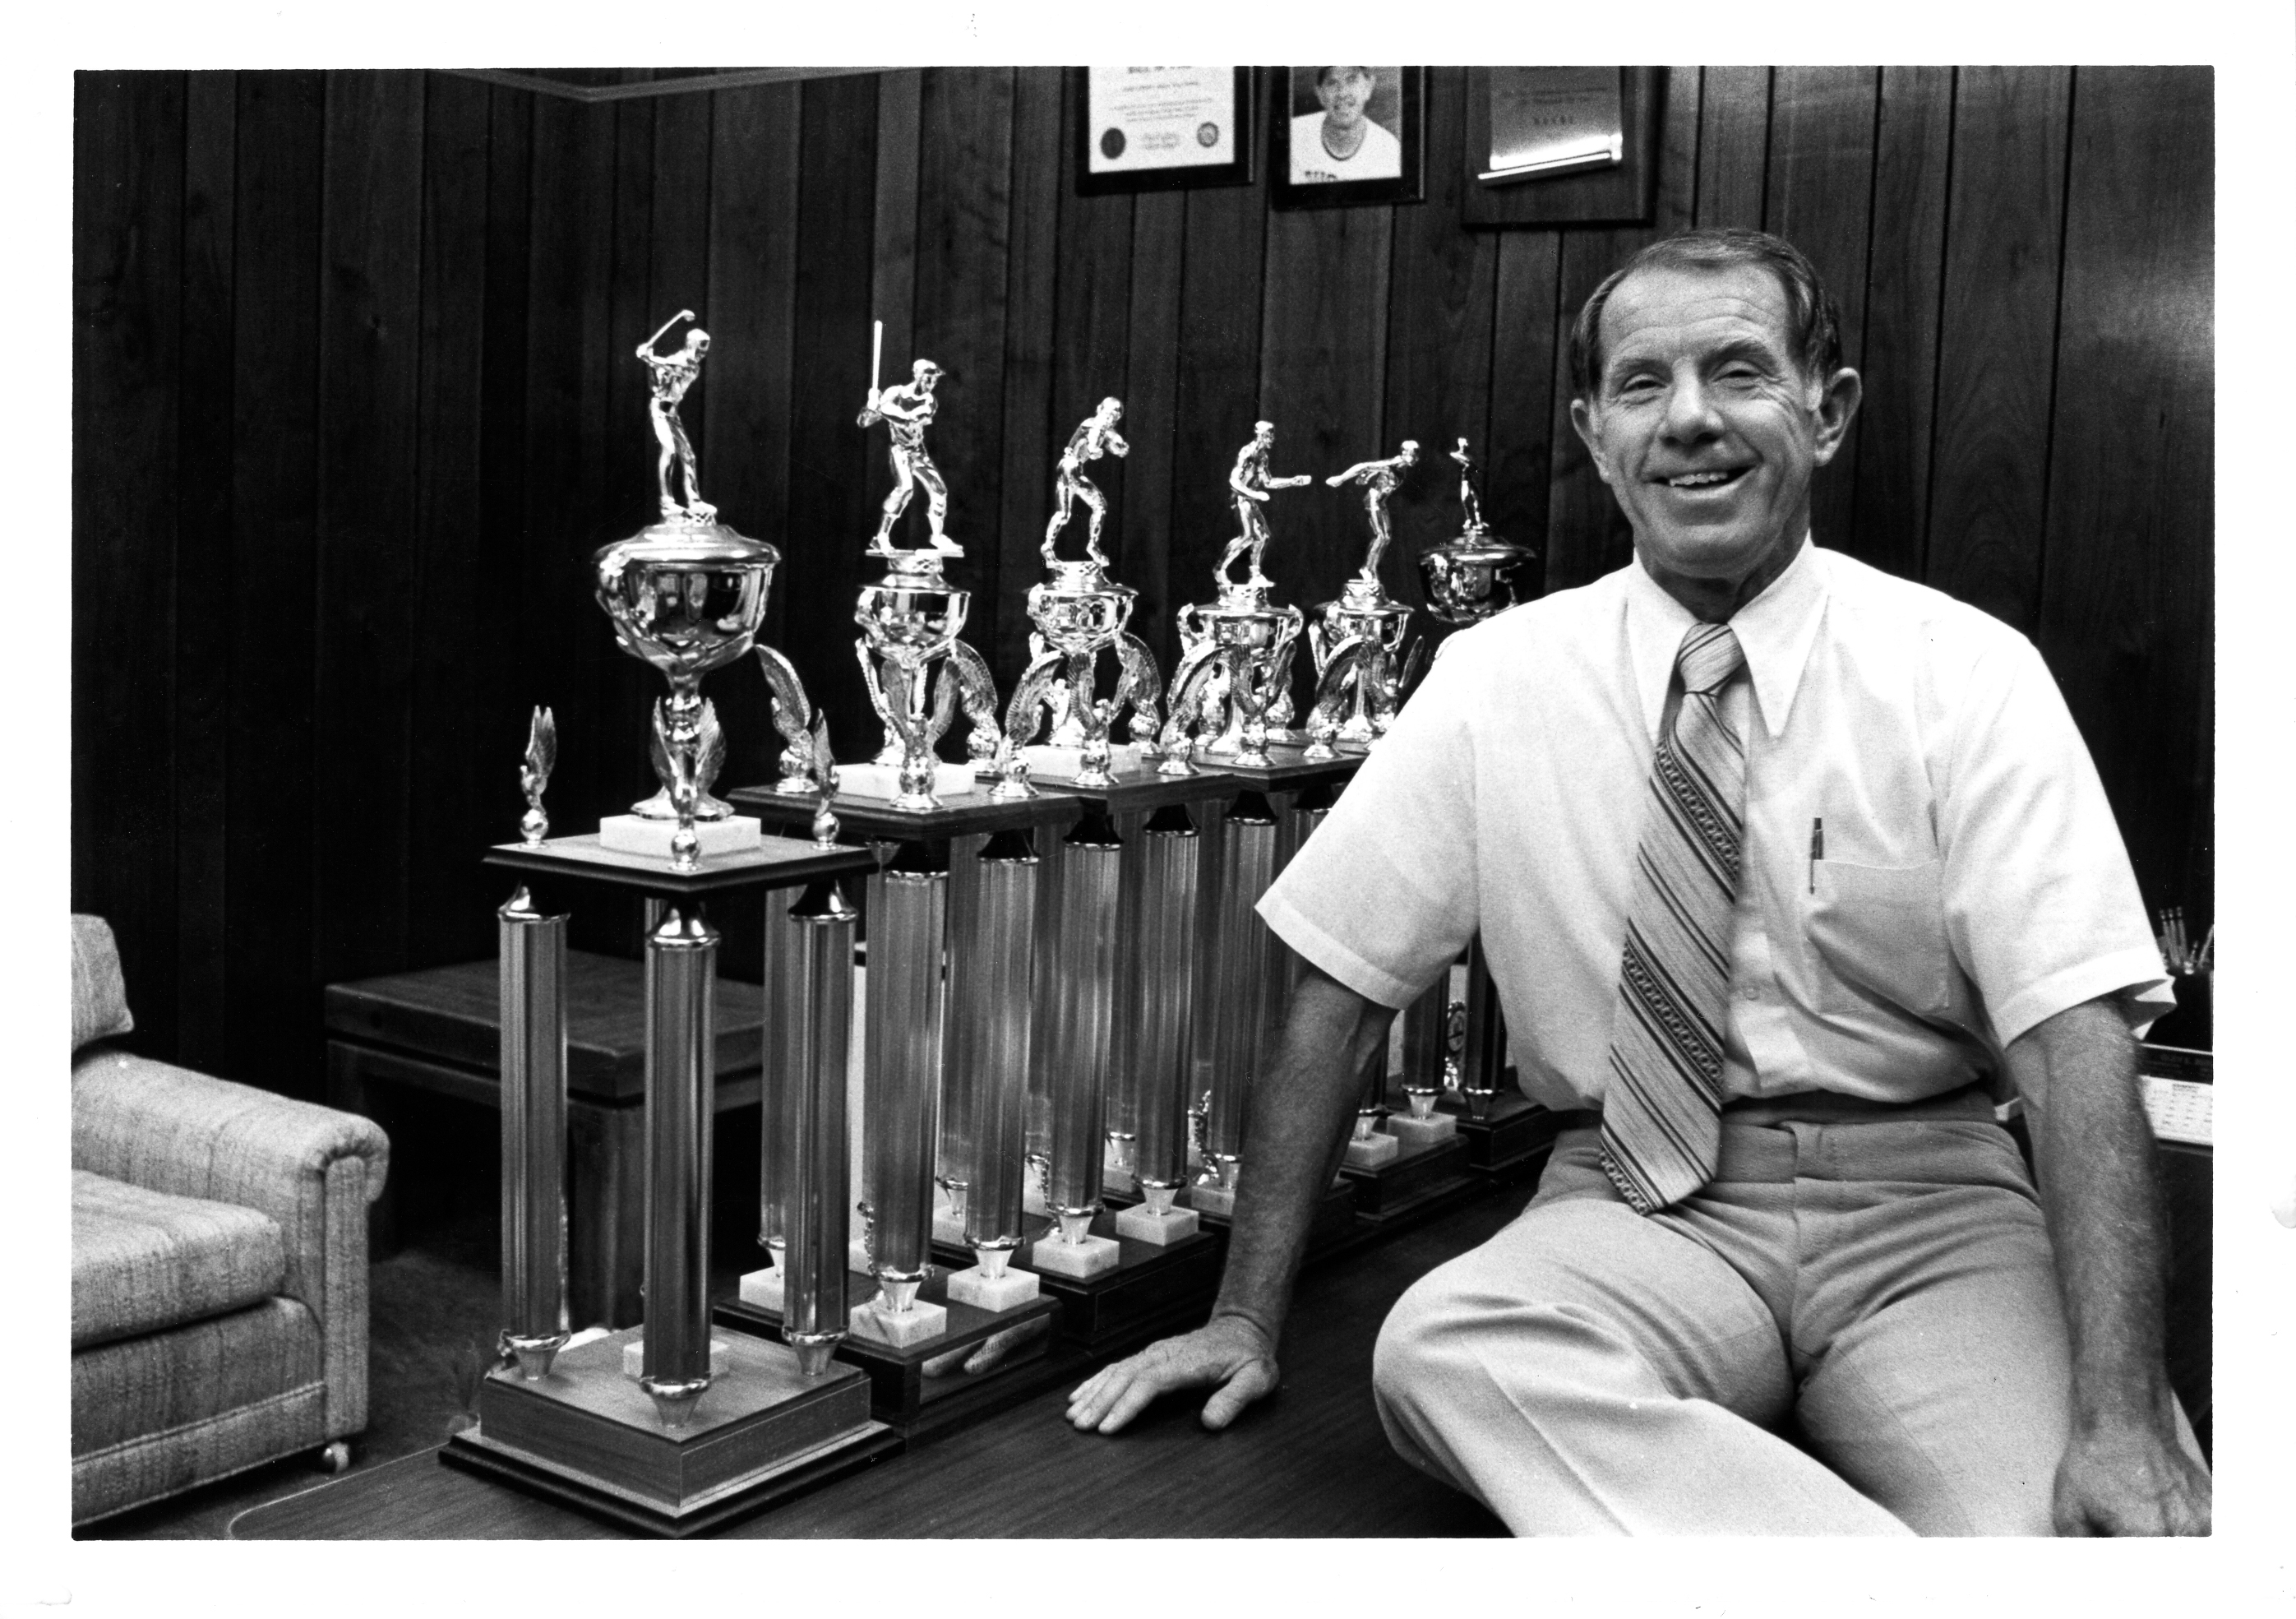 Glen Tuckett with trophies